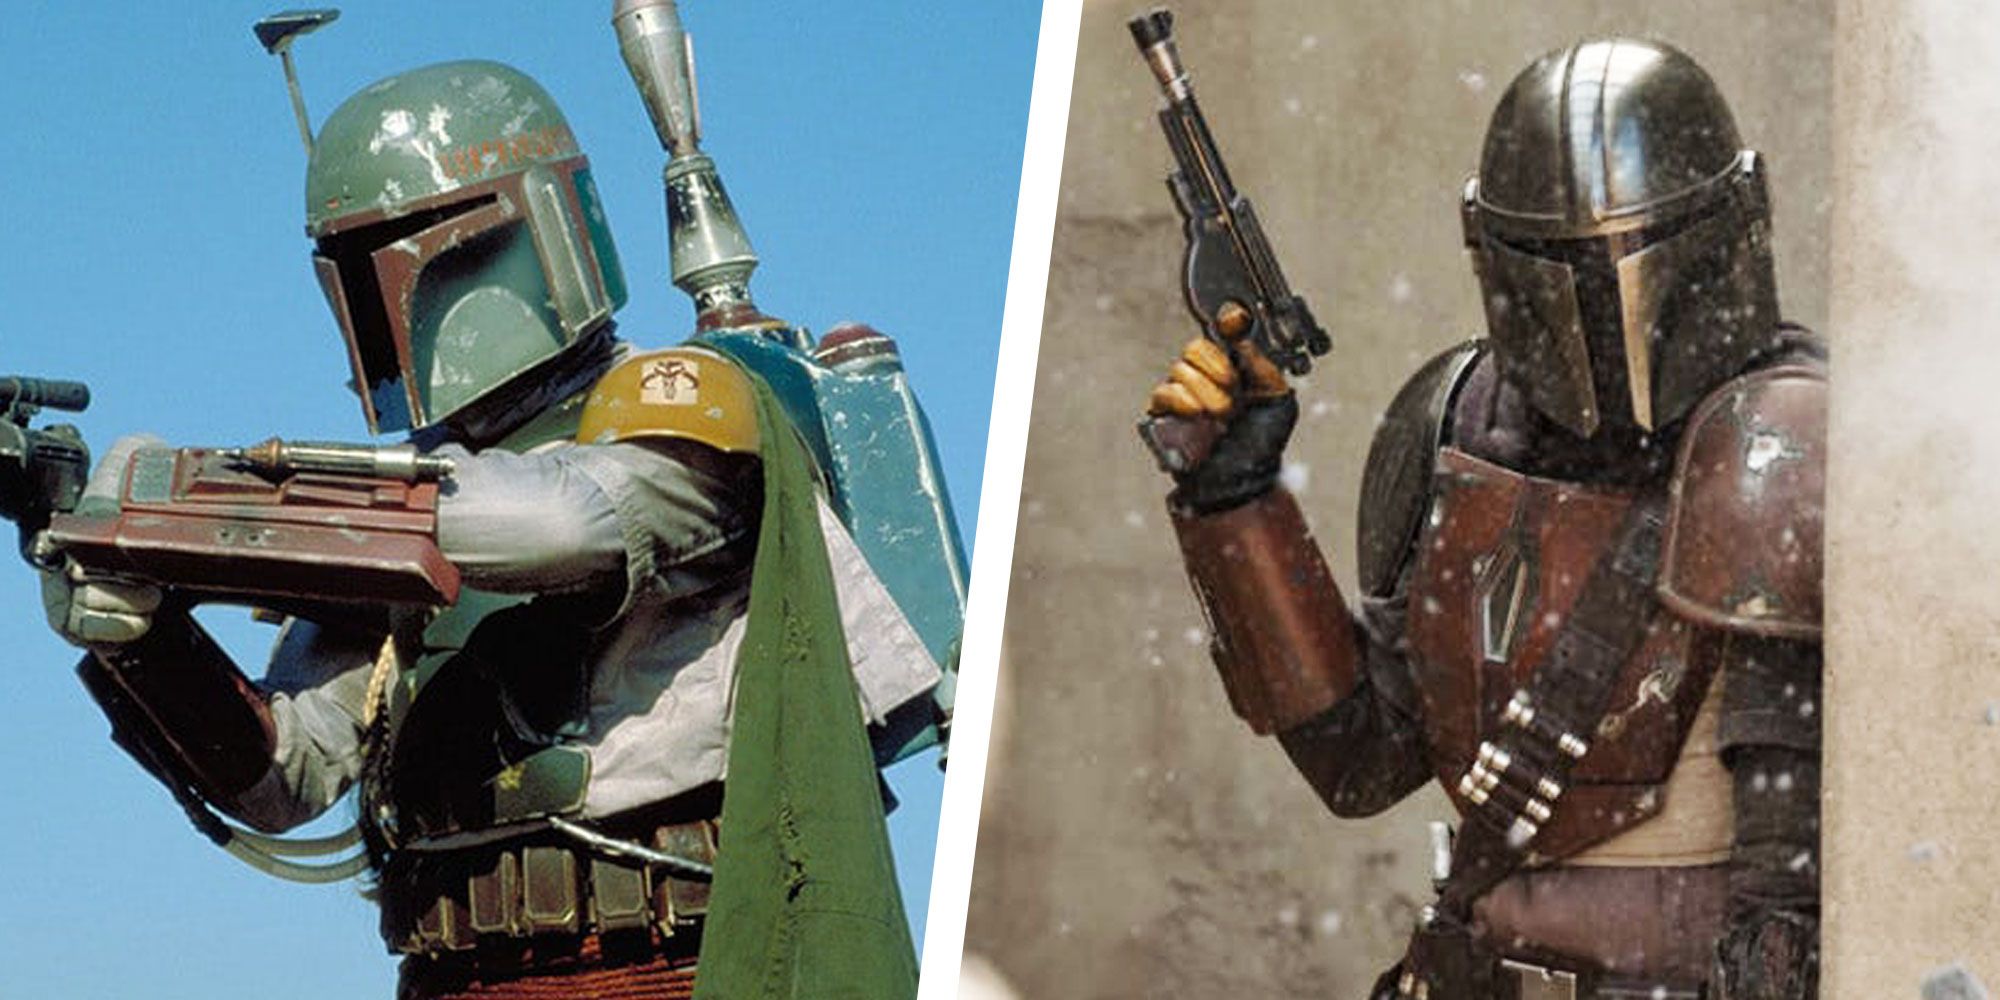 Boba Fett to Appear in Season 2 of Star Wars ‘The Mandalorian’